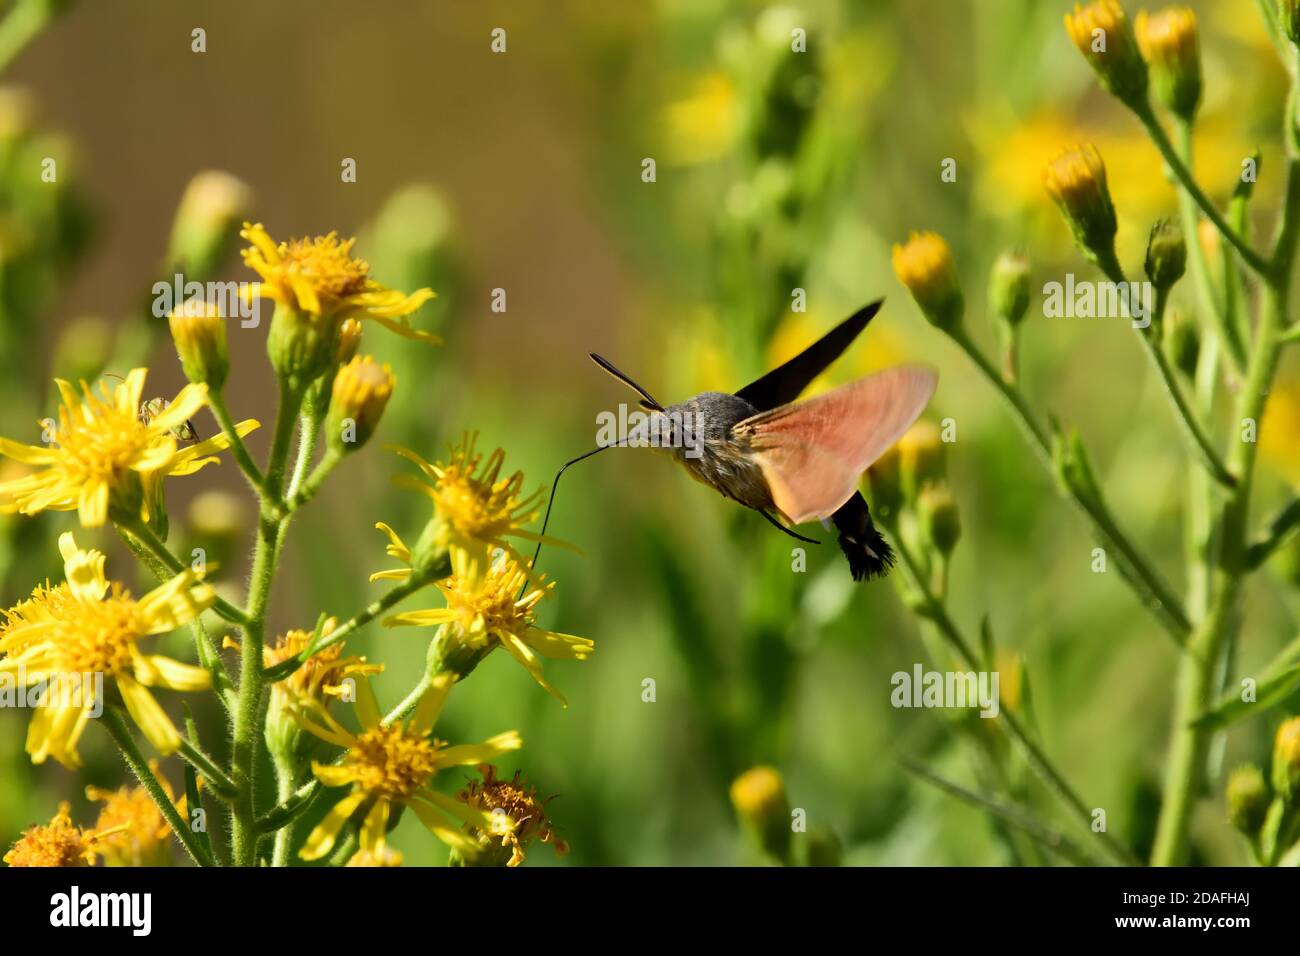 Isoliertes Exemplar eines Falkenmotten-Kolibris (Macroglossum stellatarum). Er fliegt schnell von Blume zu Blume und wird auch Sphinx Kolibri genannt. Stockfoto